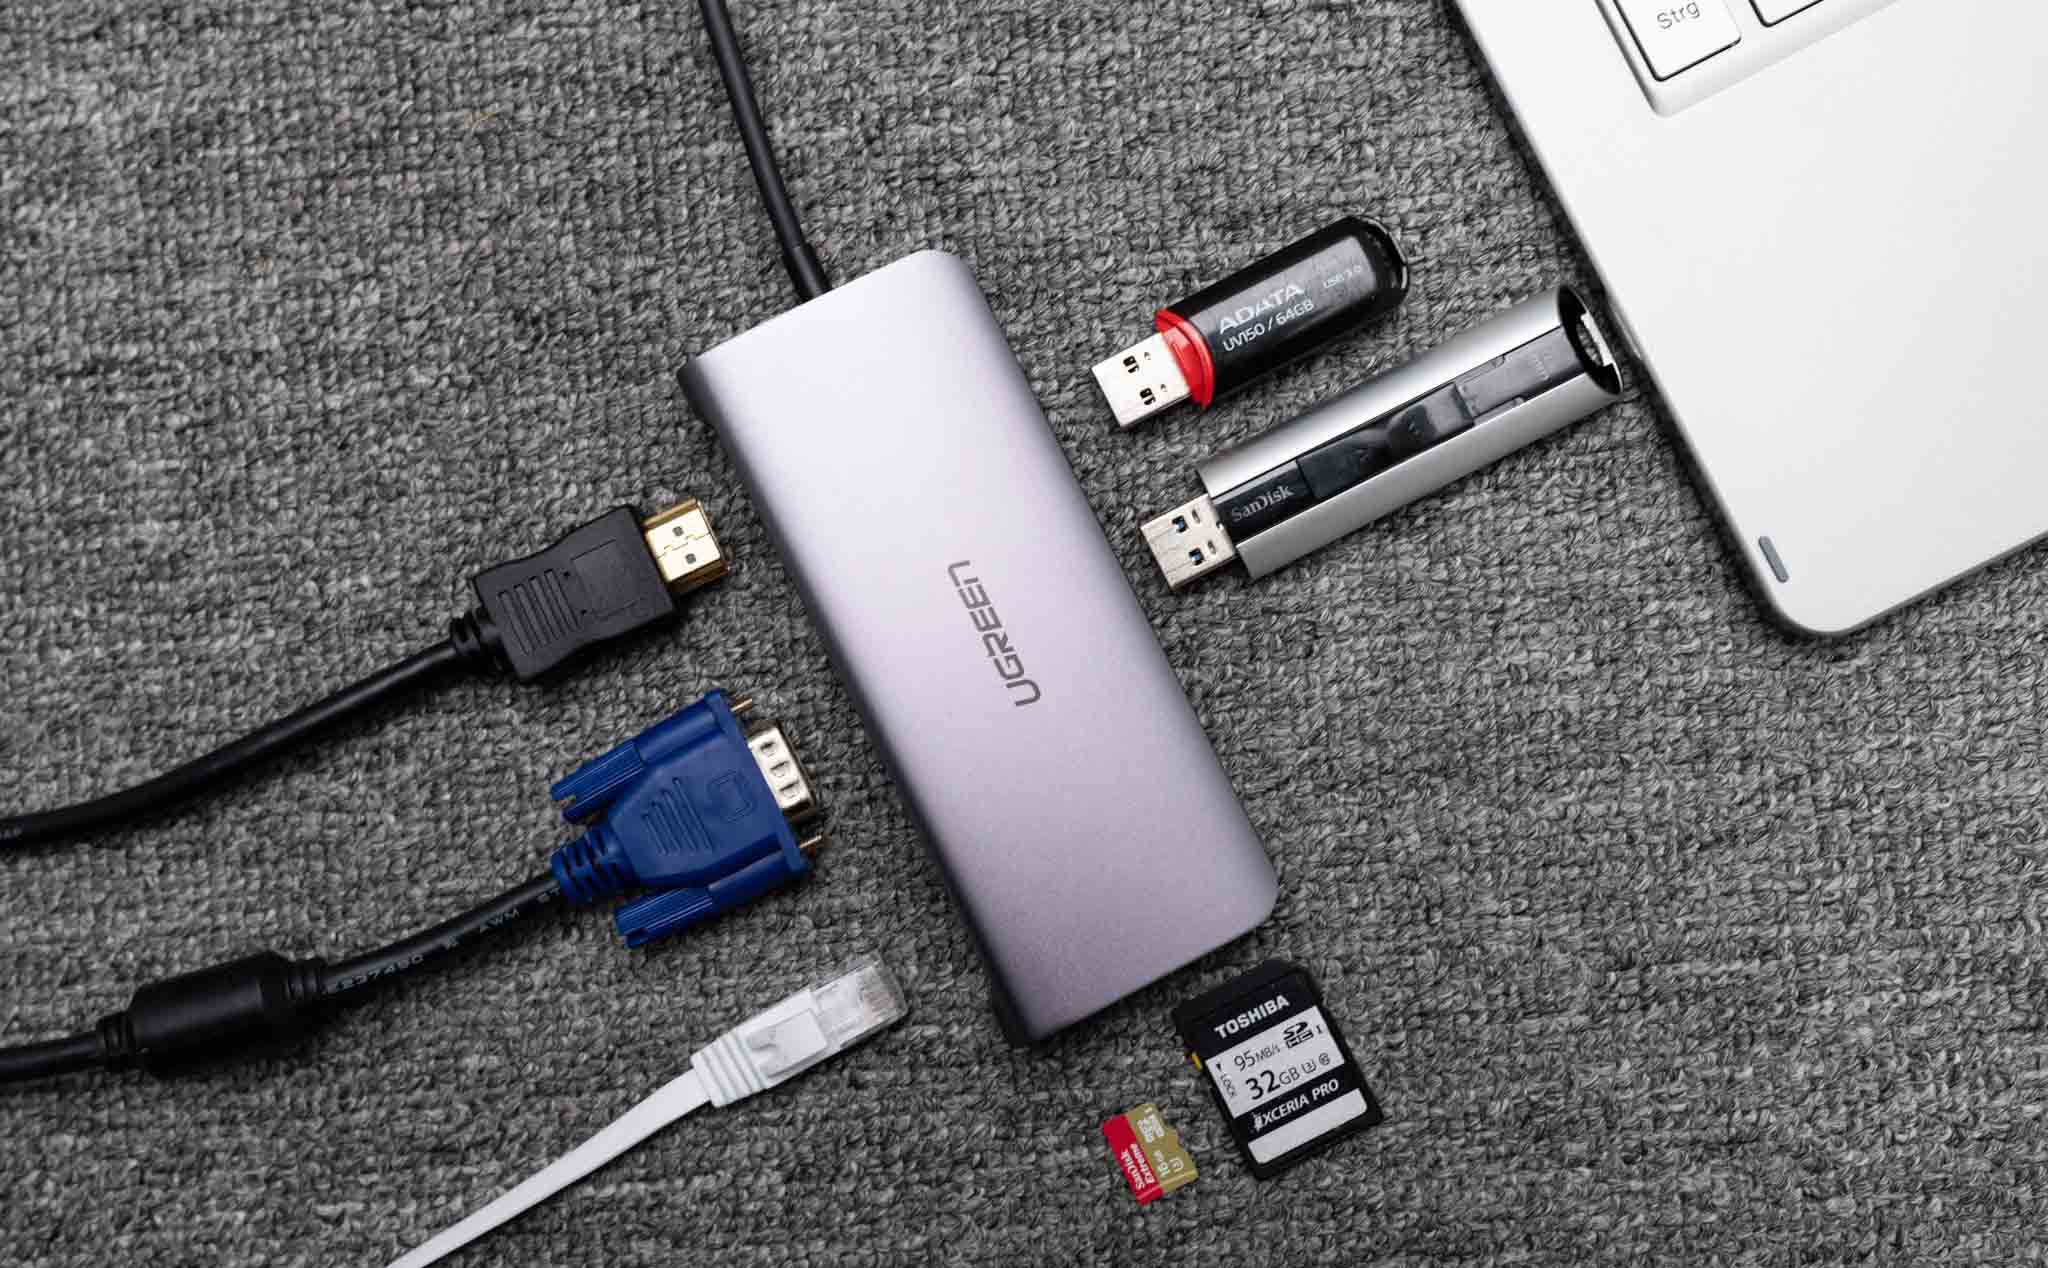 Trên tay hub chuyển USB-C ra nhiều cổng của Ugreen: có VGA, USB-C, HDMI, SD, USB 3.0, RJ-45